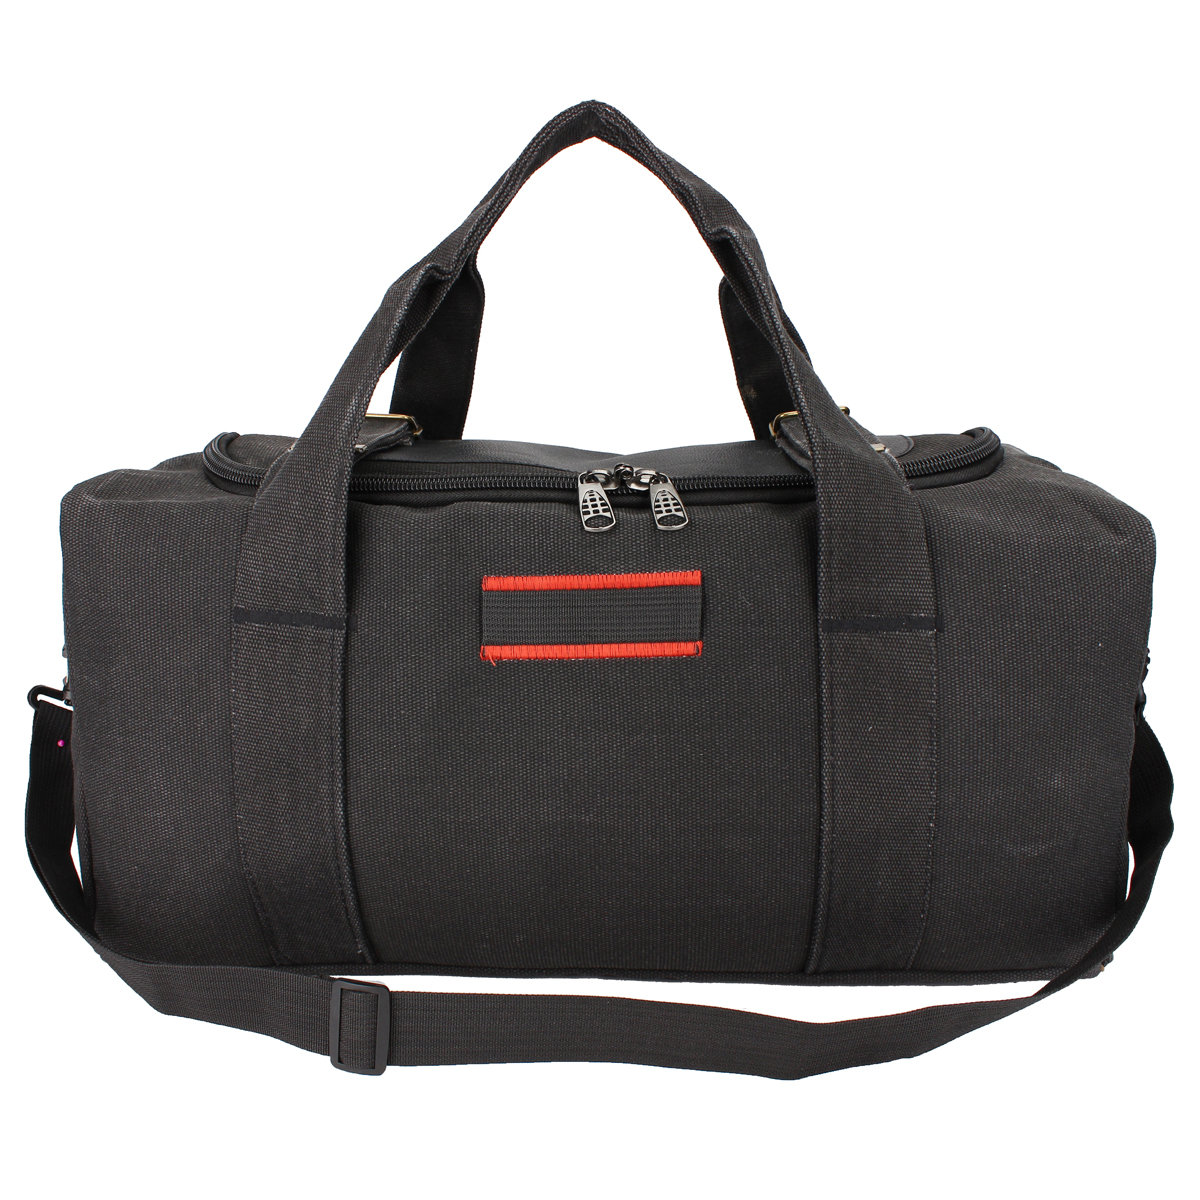 22 Zoll Outdoor Reise Gepäck Handtasche Messenger Bag Canvas Gym Duffle Schulter Pack Tasche